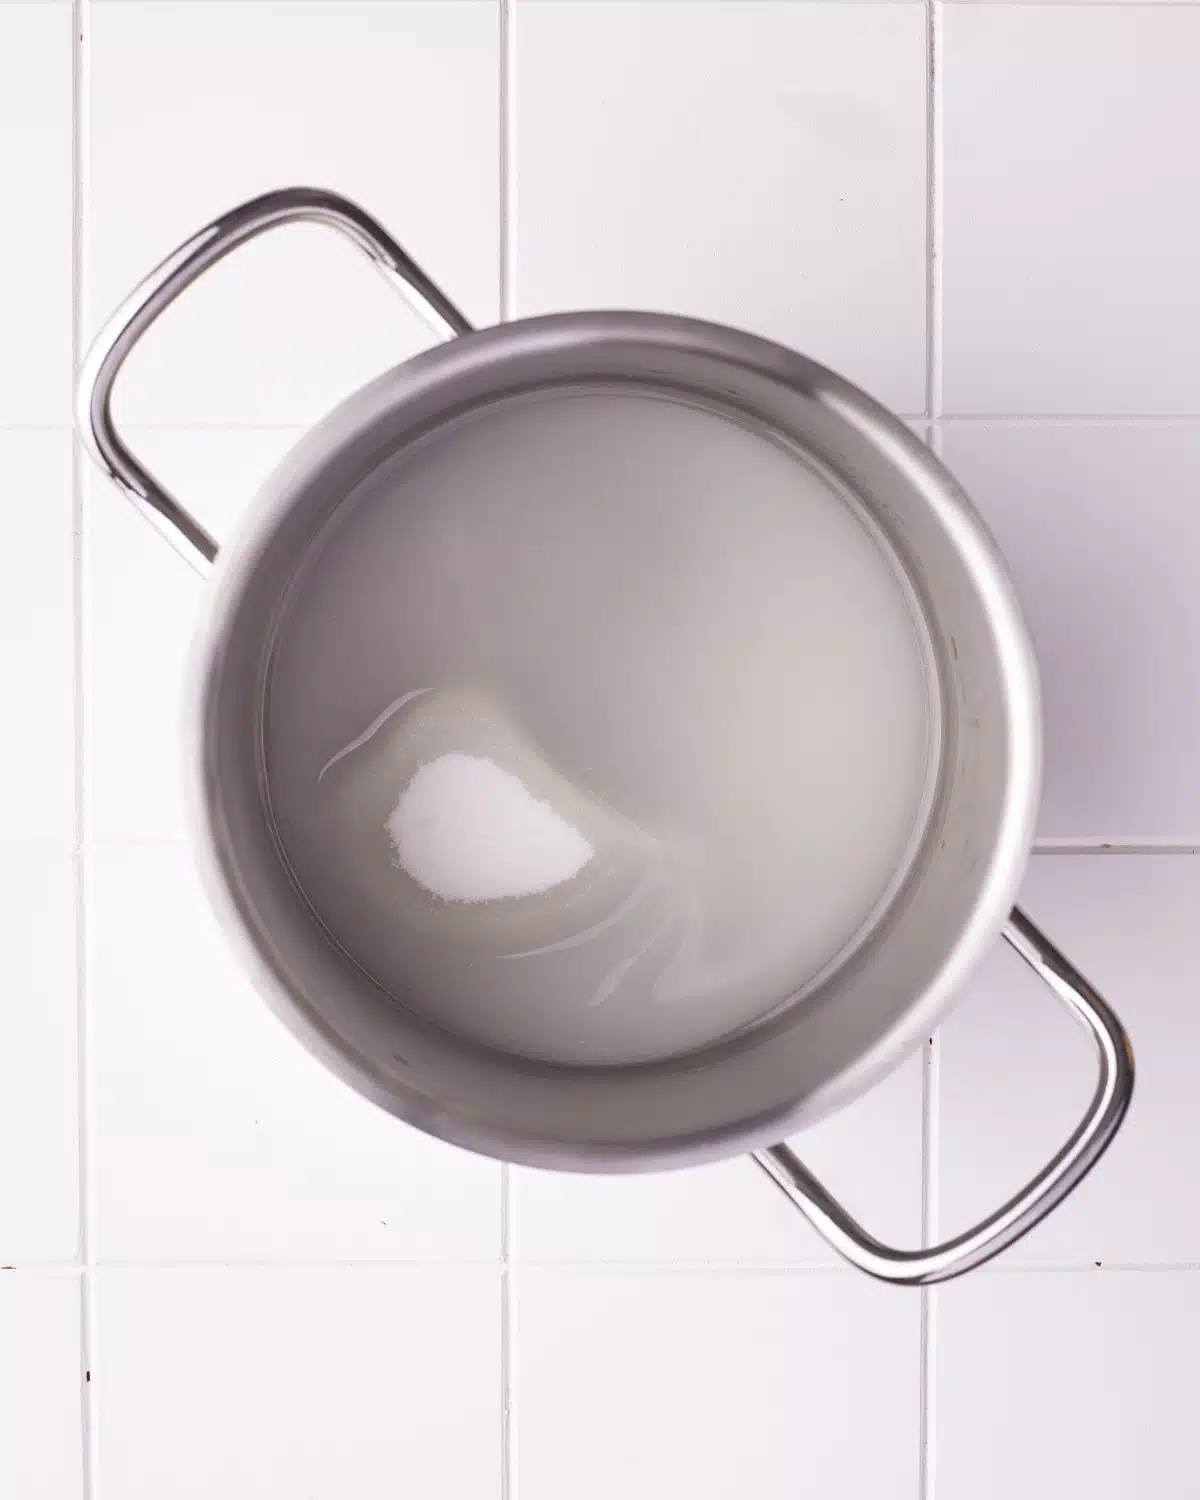 sugar and water in a saucepan to make sugar syrup.